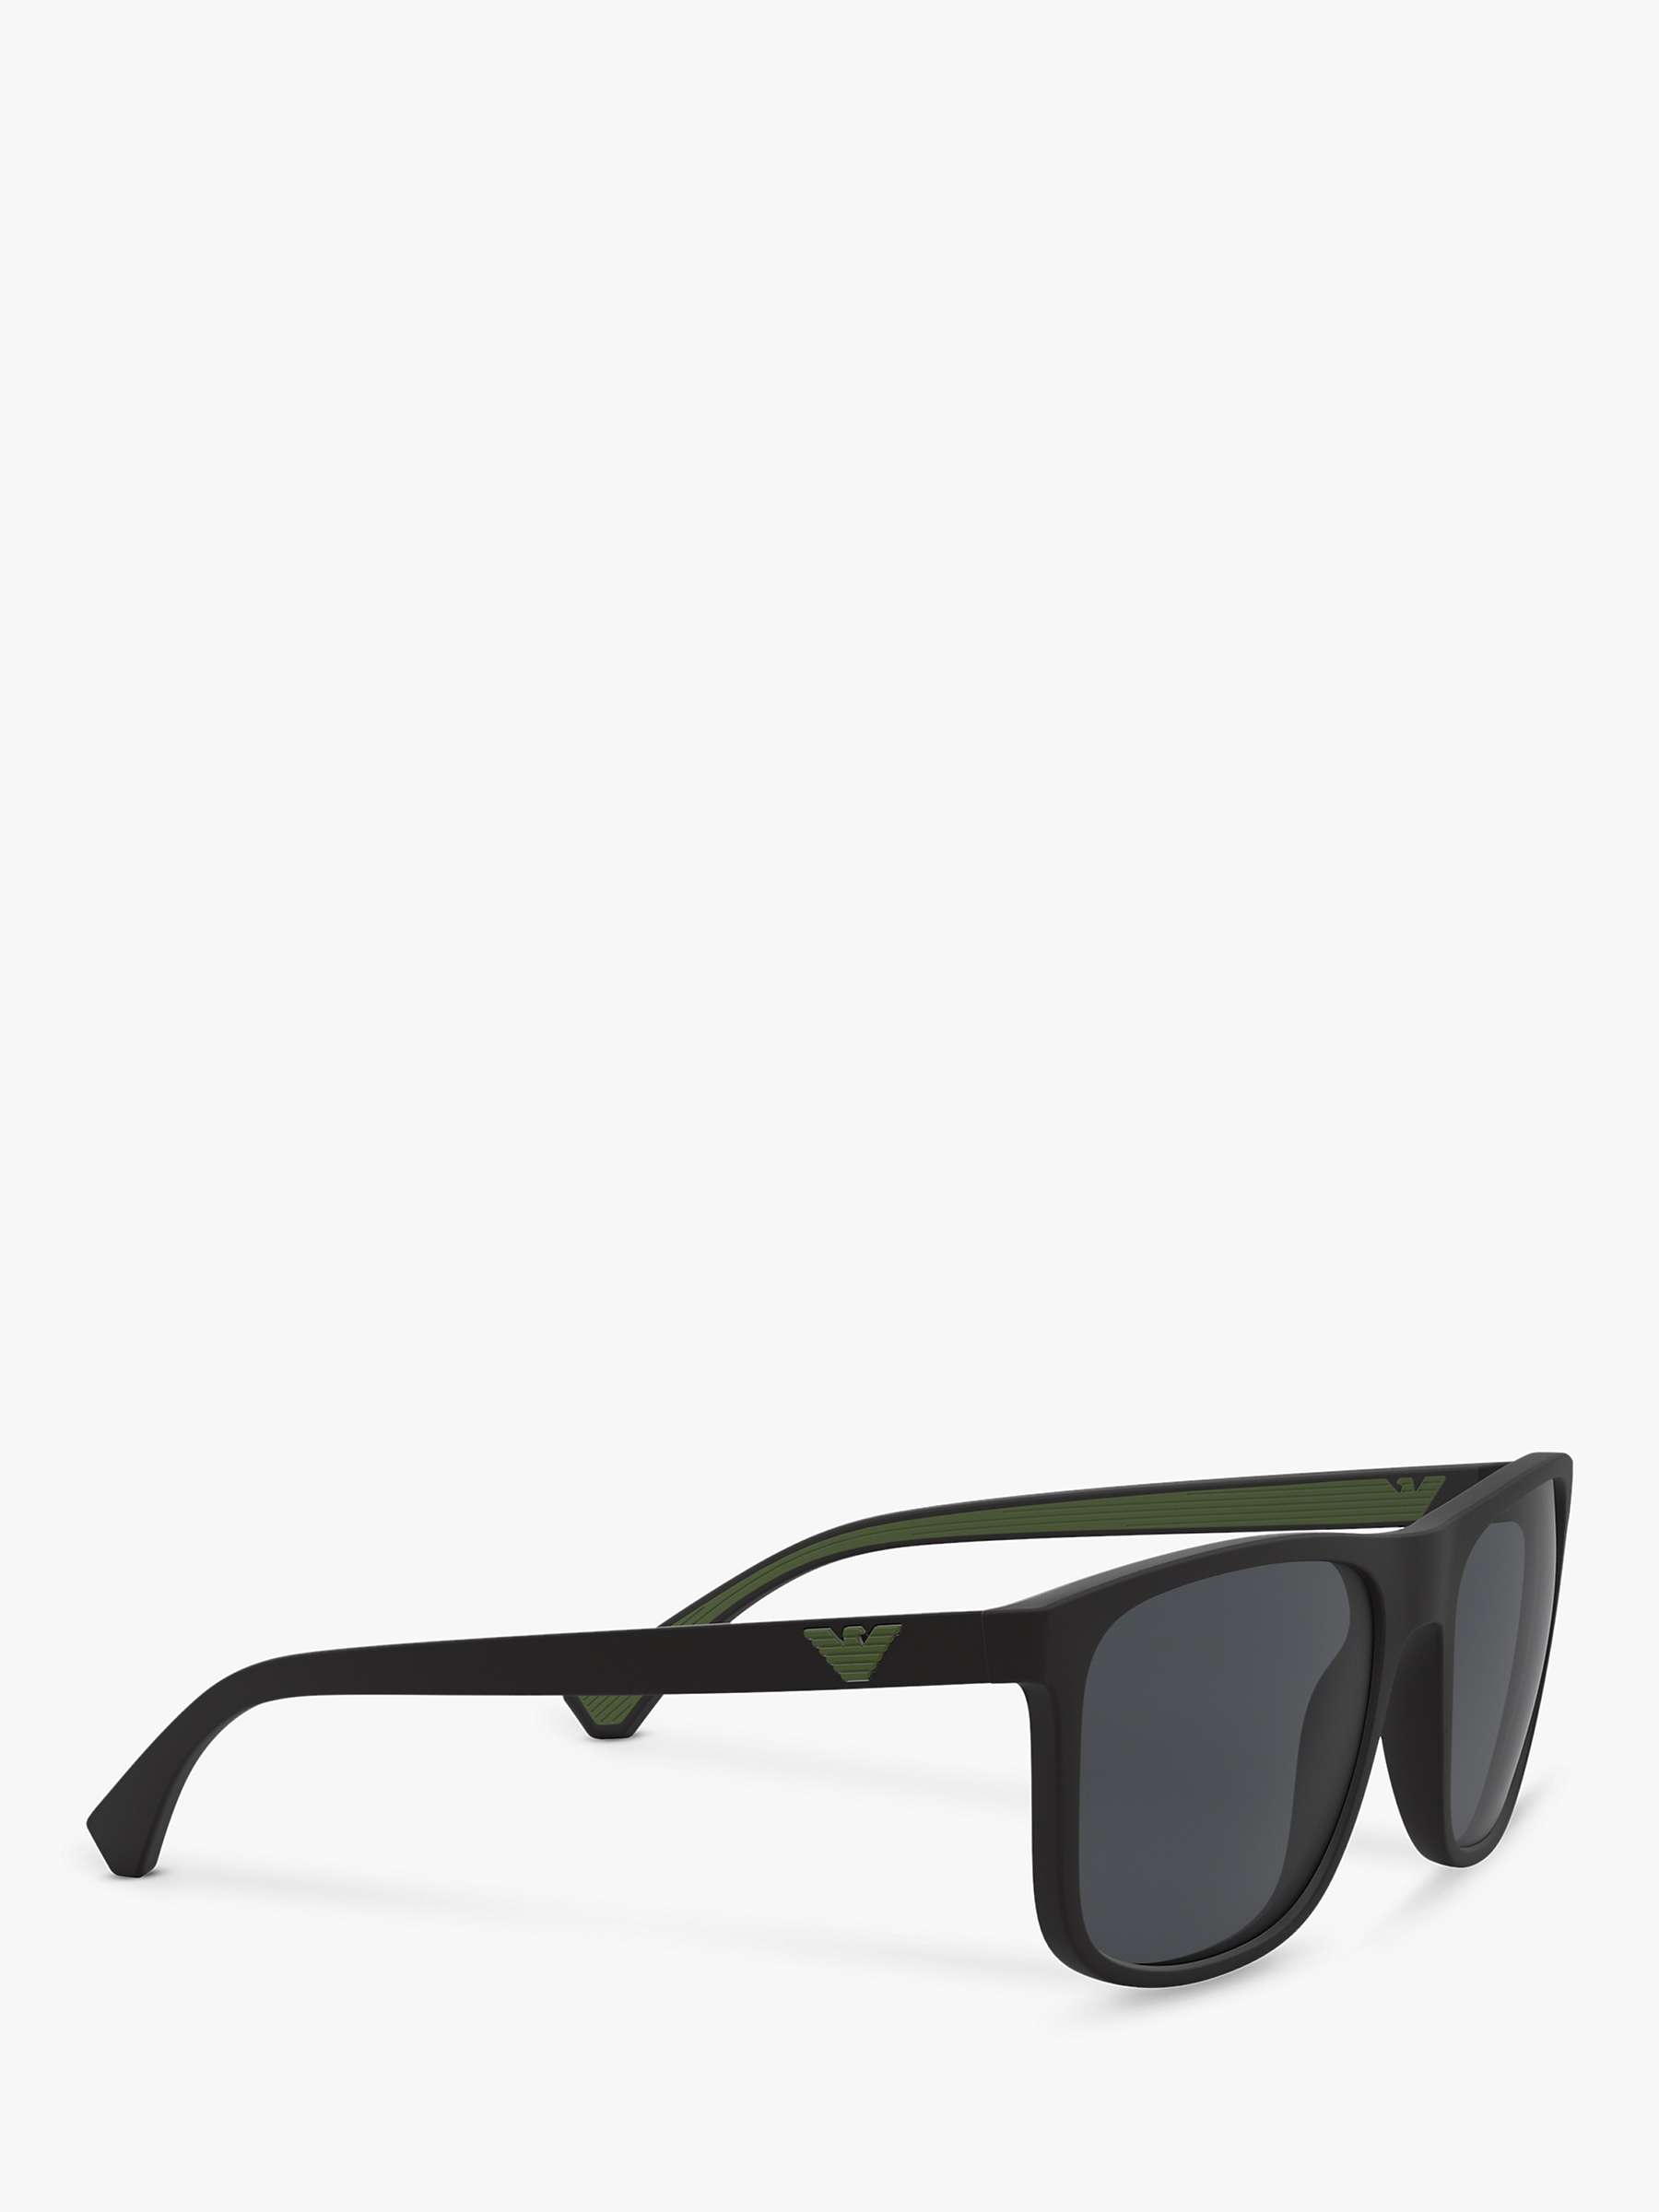 Buy Emporio Armani EA4129 Men's Square Sunglasses Online at johnlewis.com